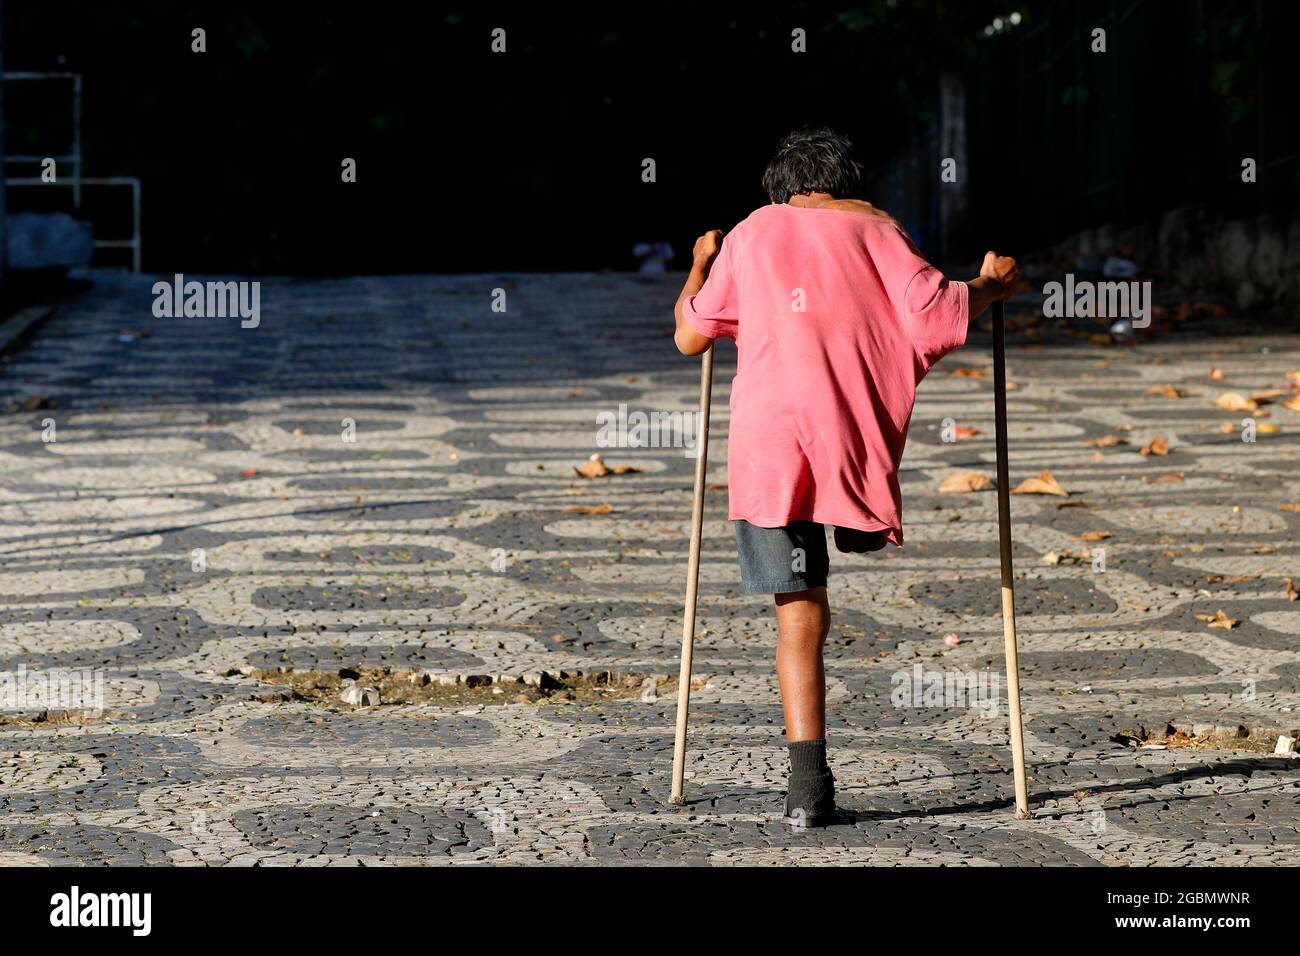 Behinderter einbeiniger behinderter Obdachloser, der auf Krücken läuft. Stockfoto